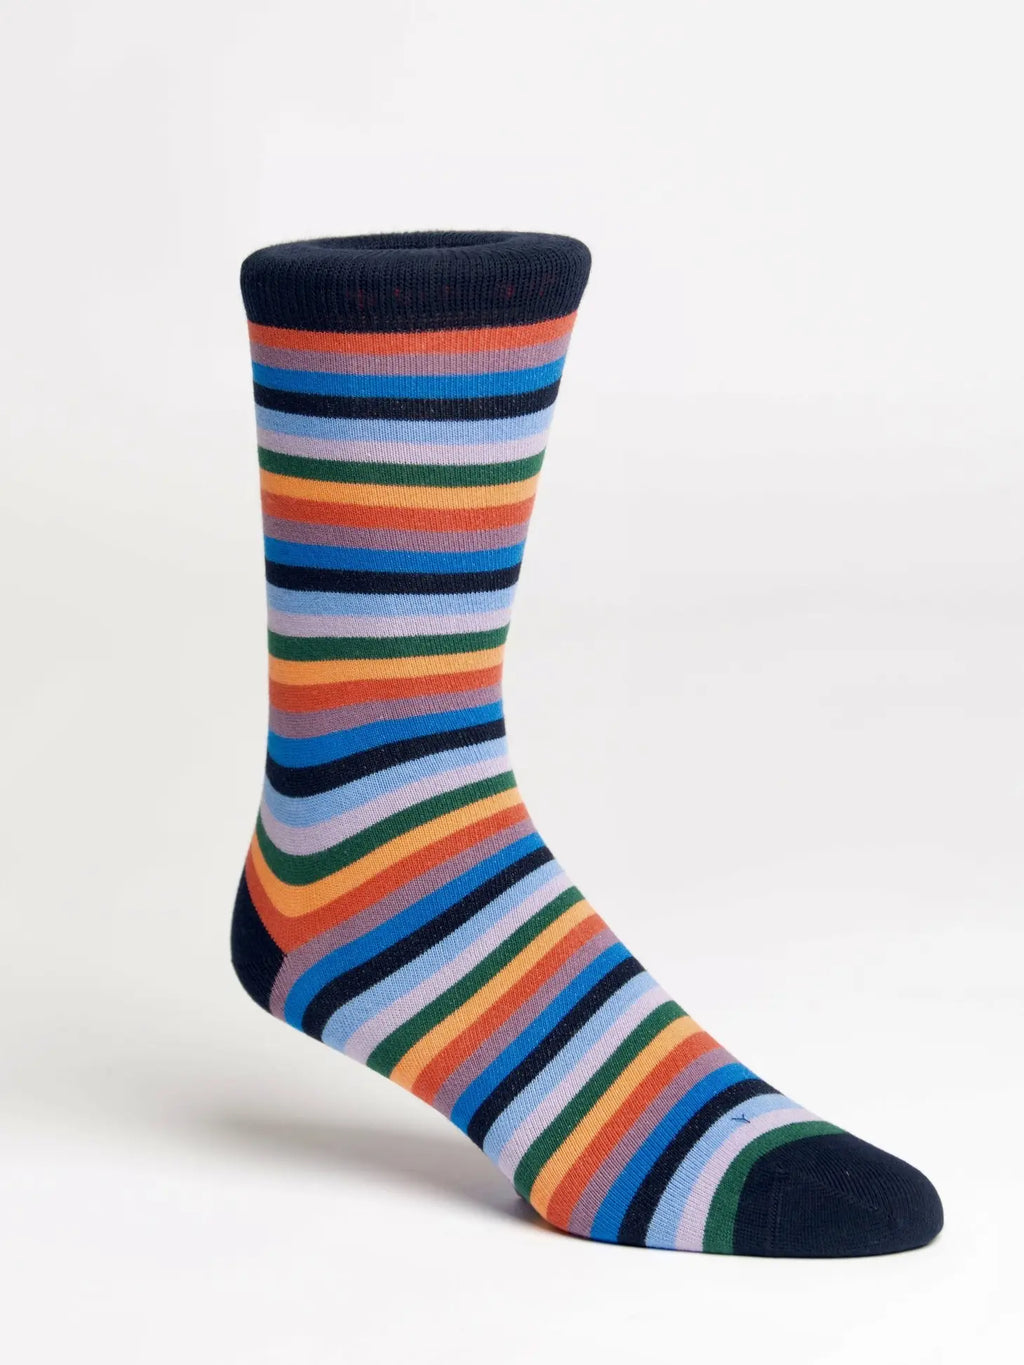 Men's Dress Socks in Various Patterns